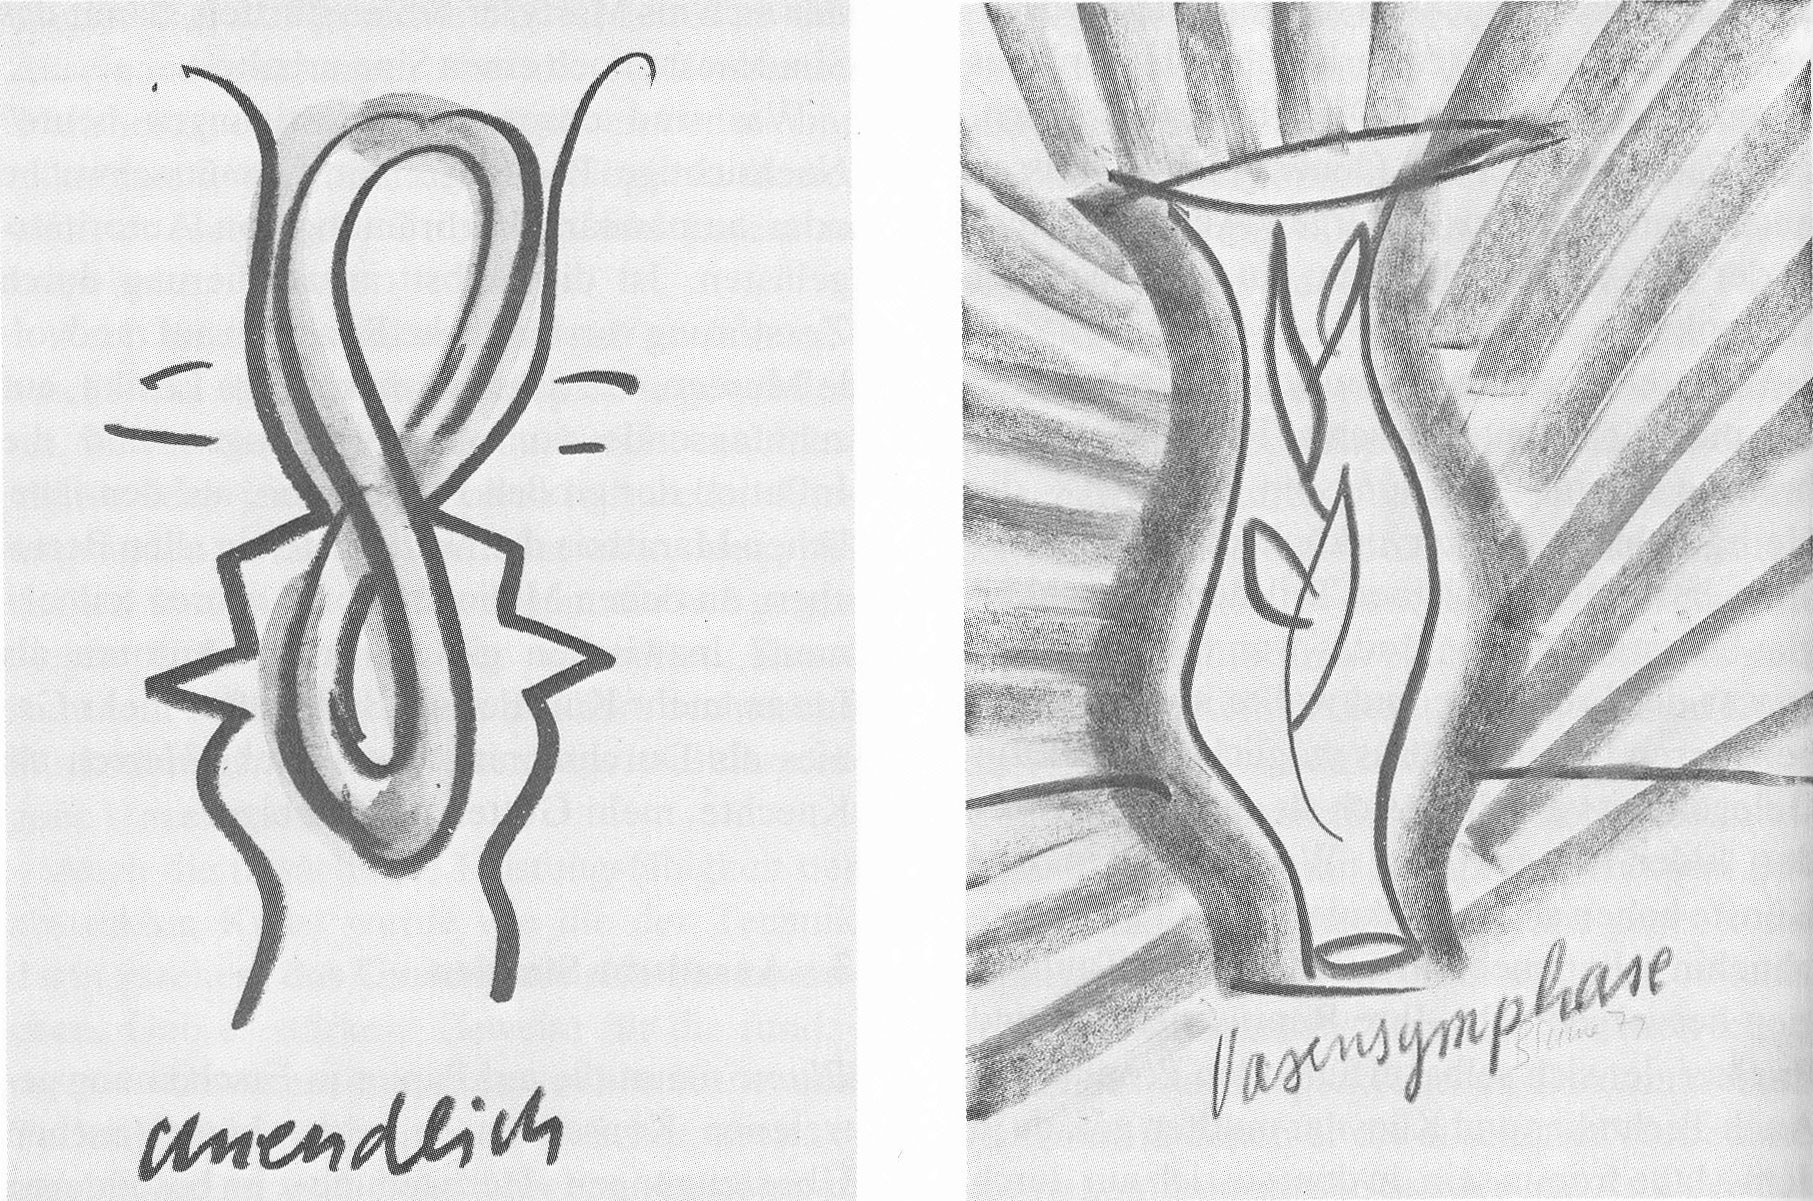 Bernhard Johannes Blume: Zwei Zeichnungen aus der Serie "Heilsgebilde", 1979 ("unendlich", "Vasensymphase")